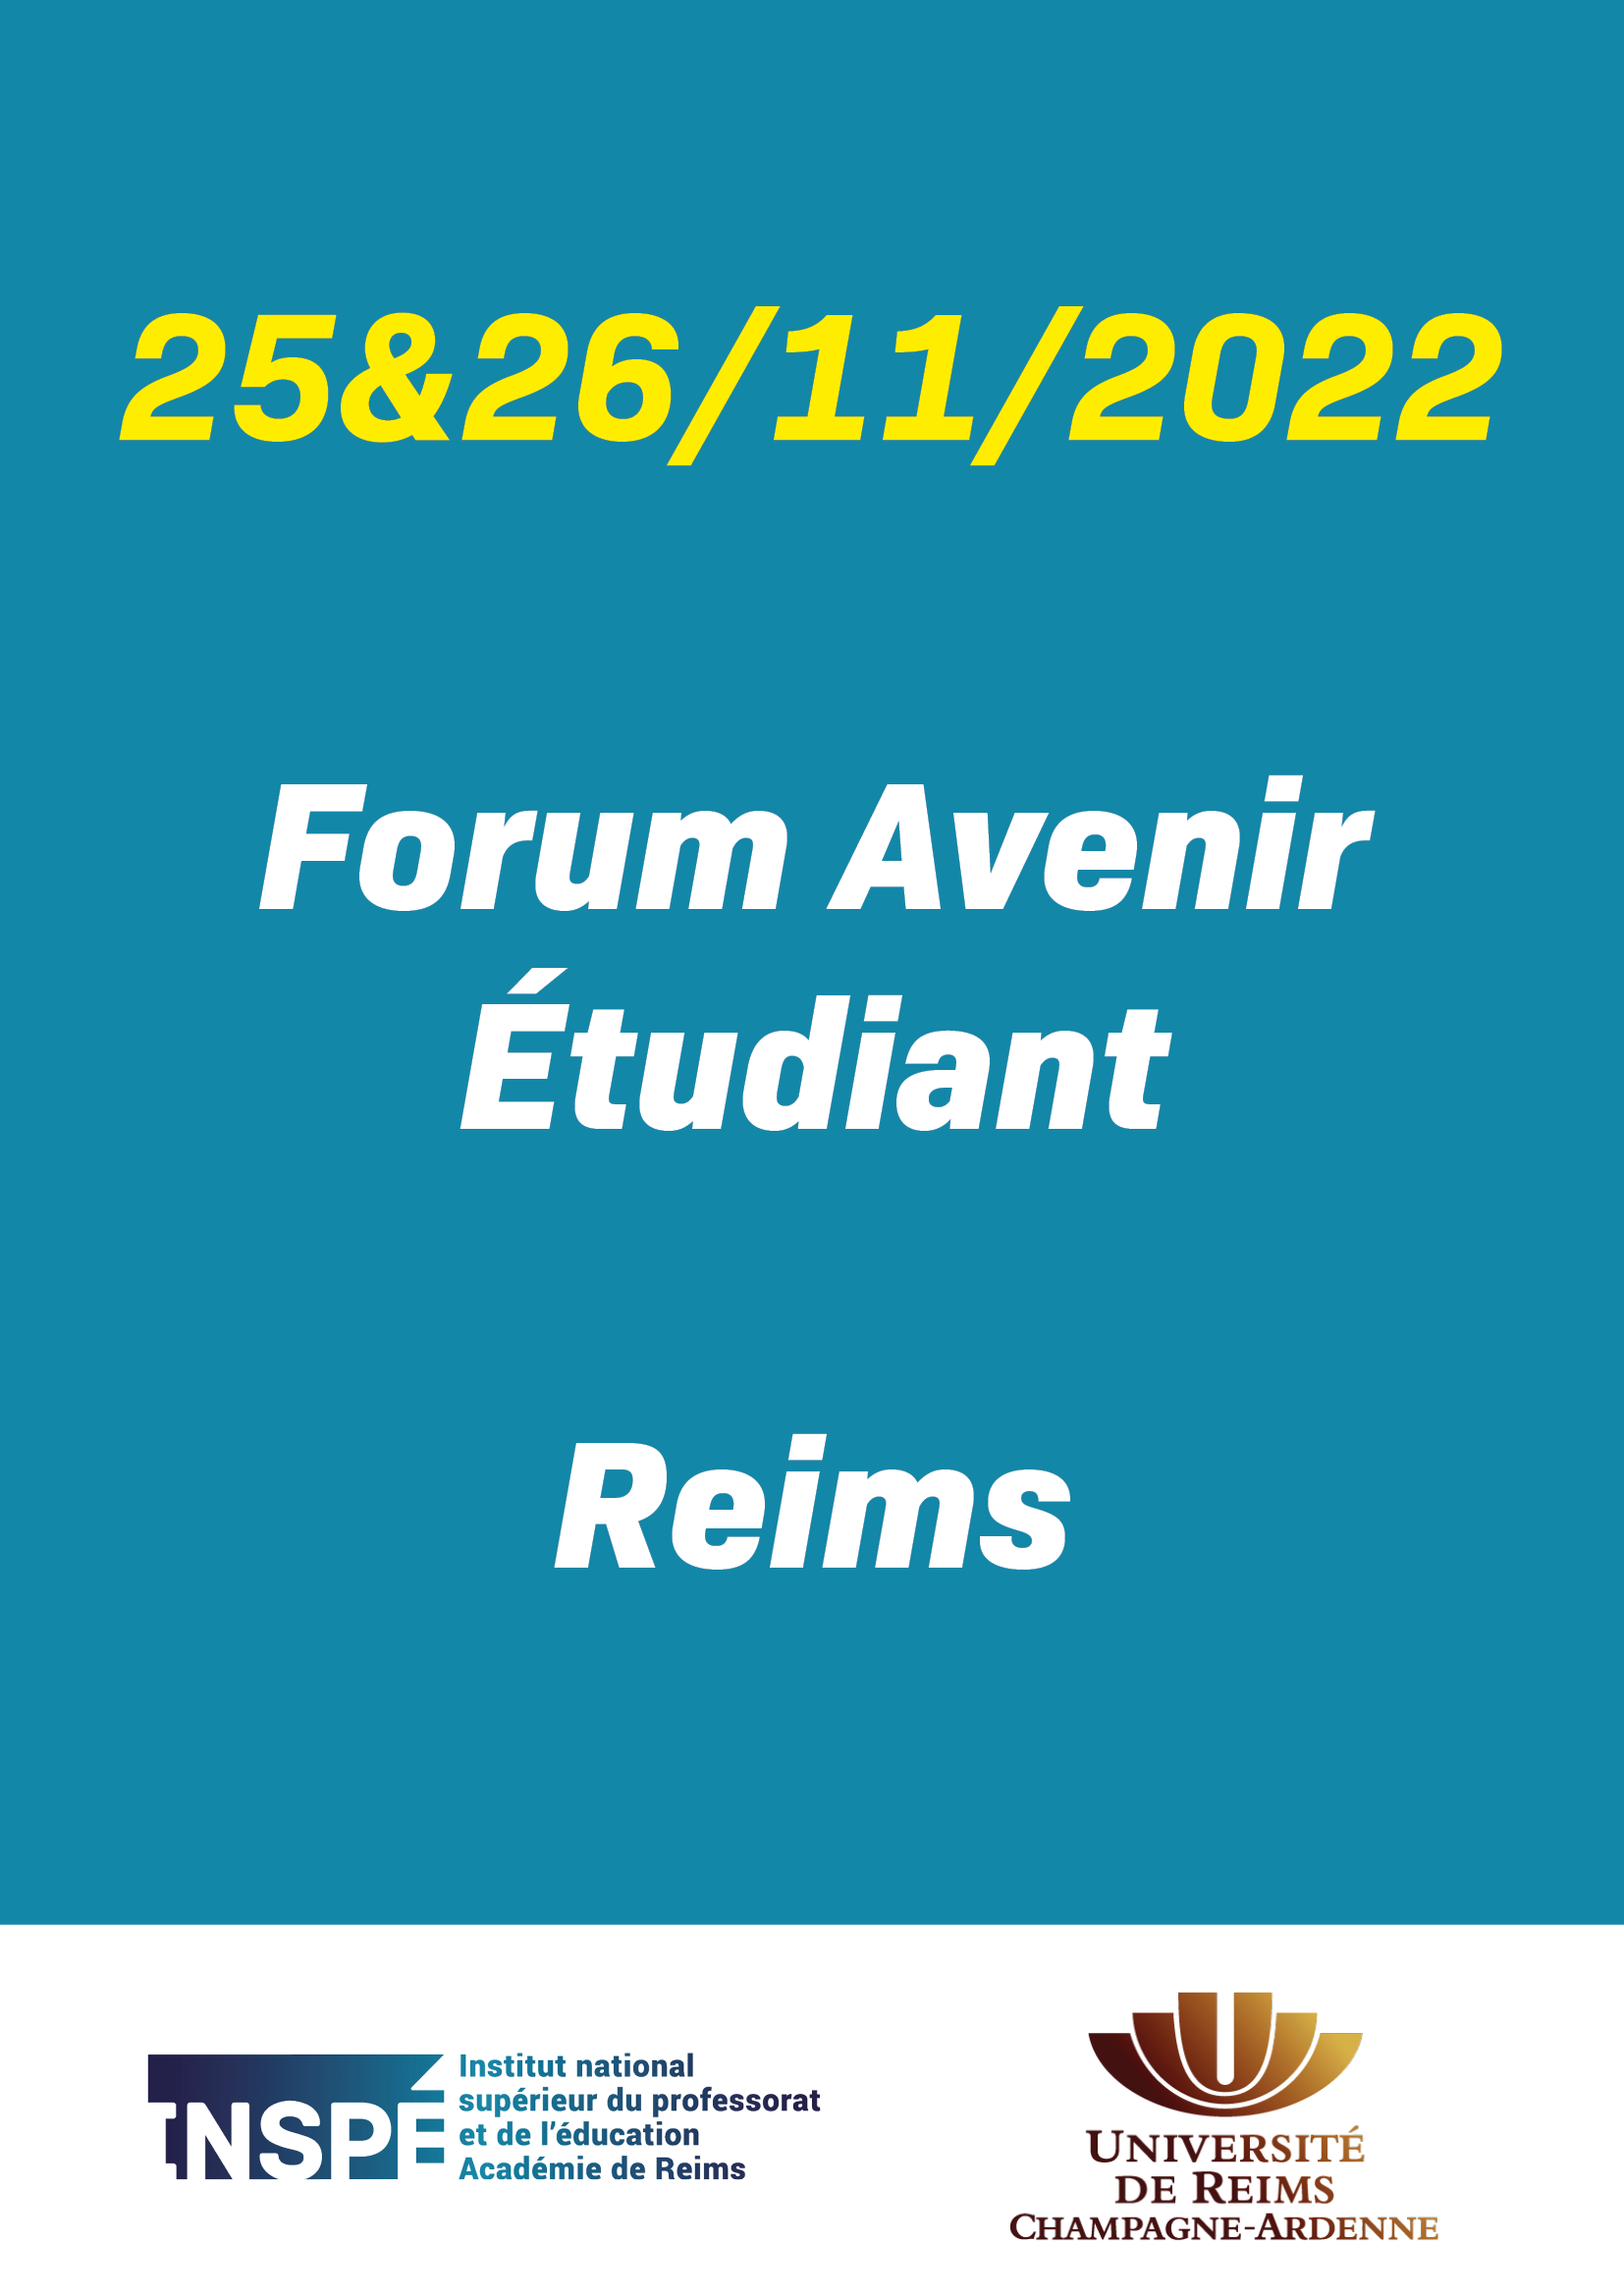 Forum Avenir Etudiant